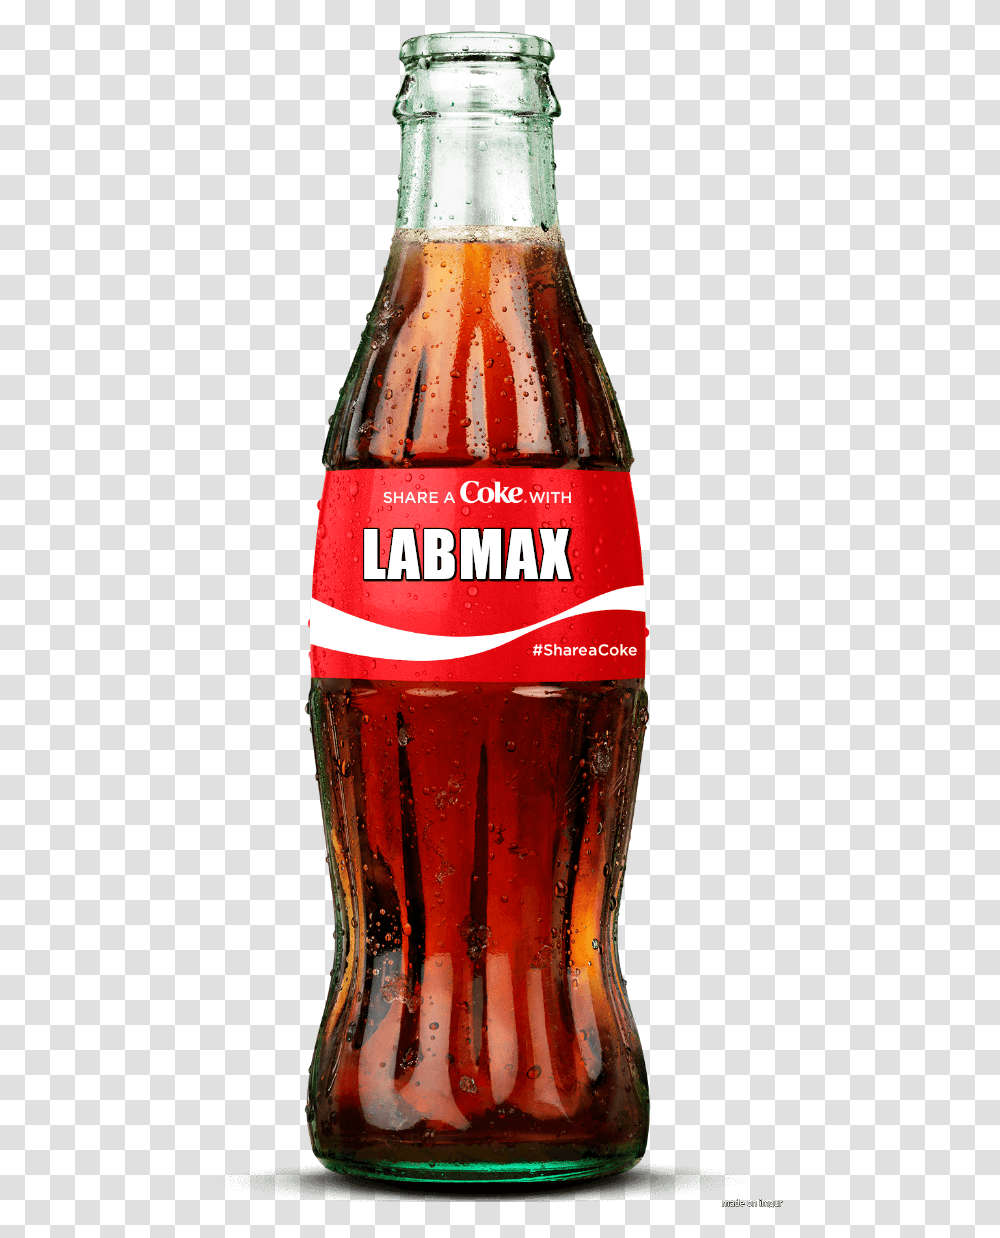 Coca Cola Bottle 2018 Download Bottle Coca Coca Cola In Greek, Soda, Beverage, Drink, Coke Transparent Png